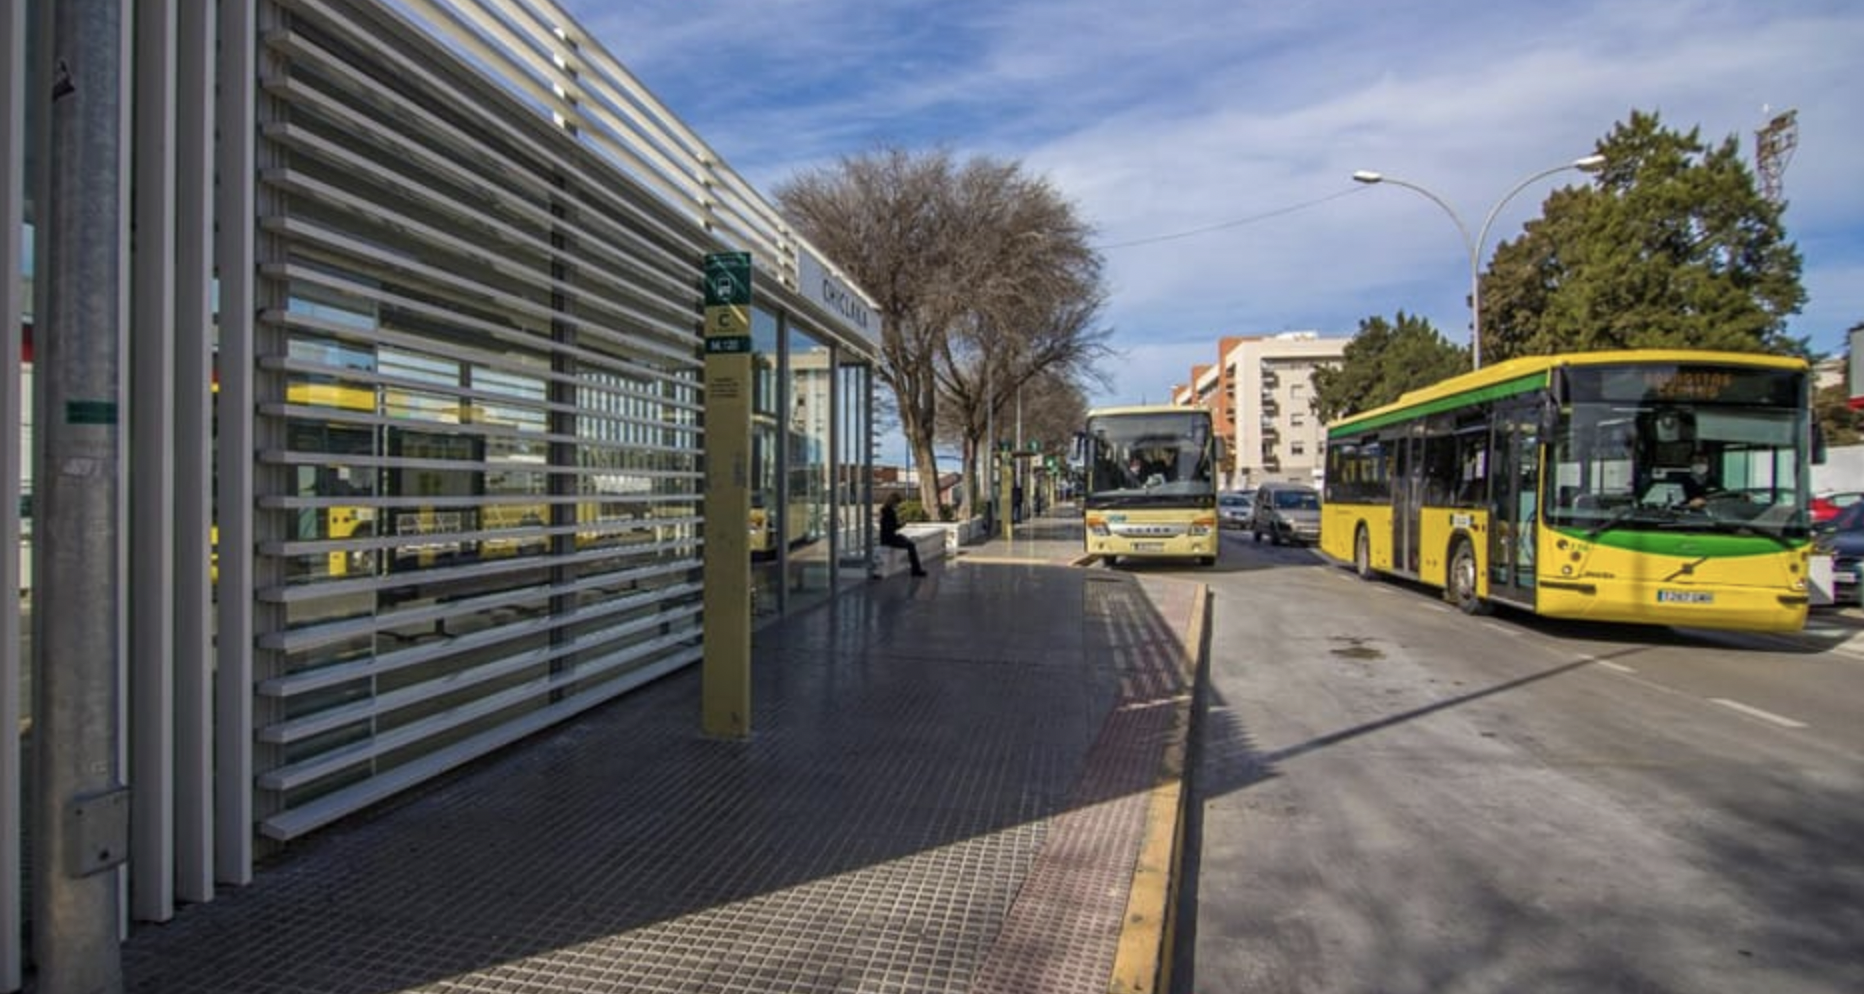 Parada de autobuses en Chiclana. 